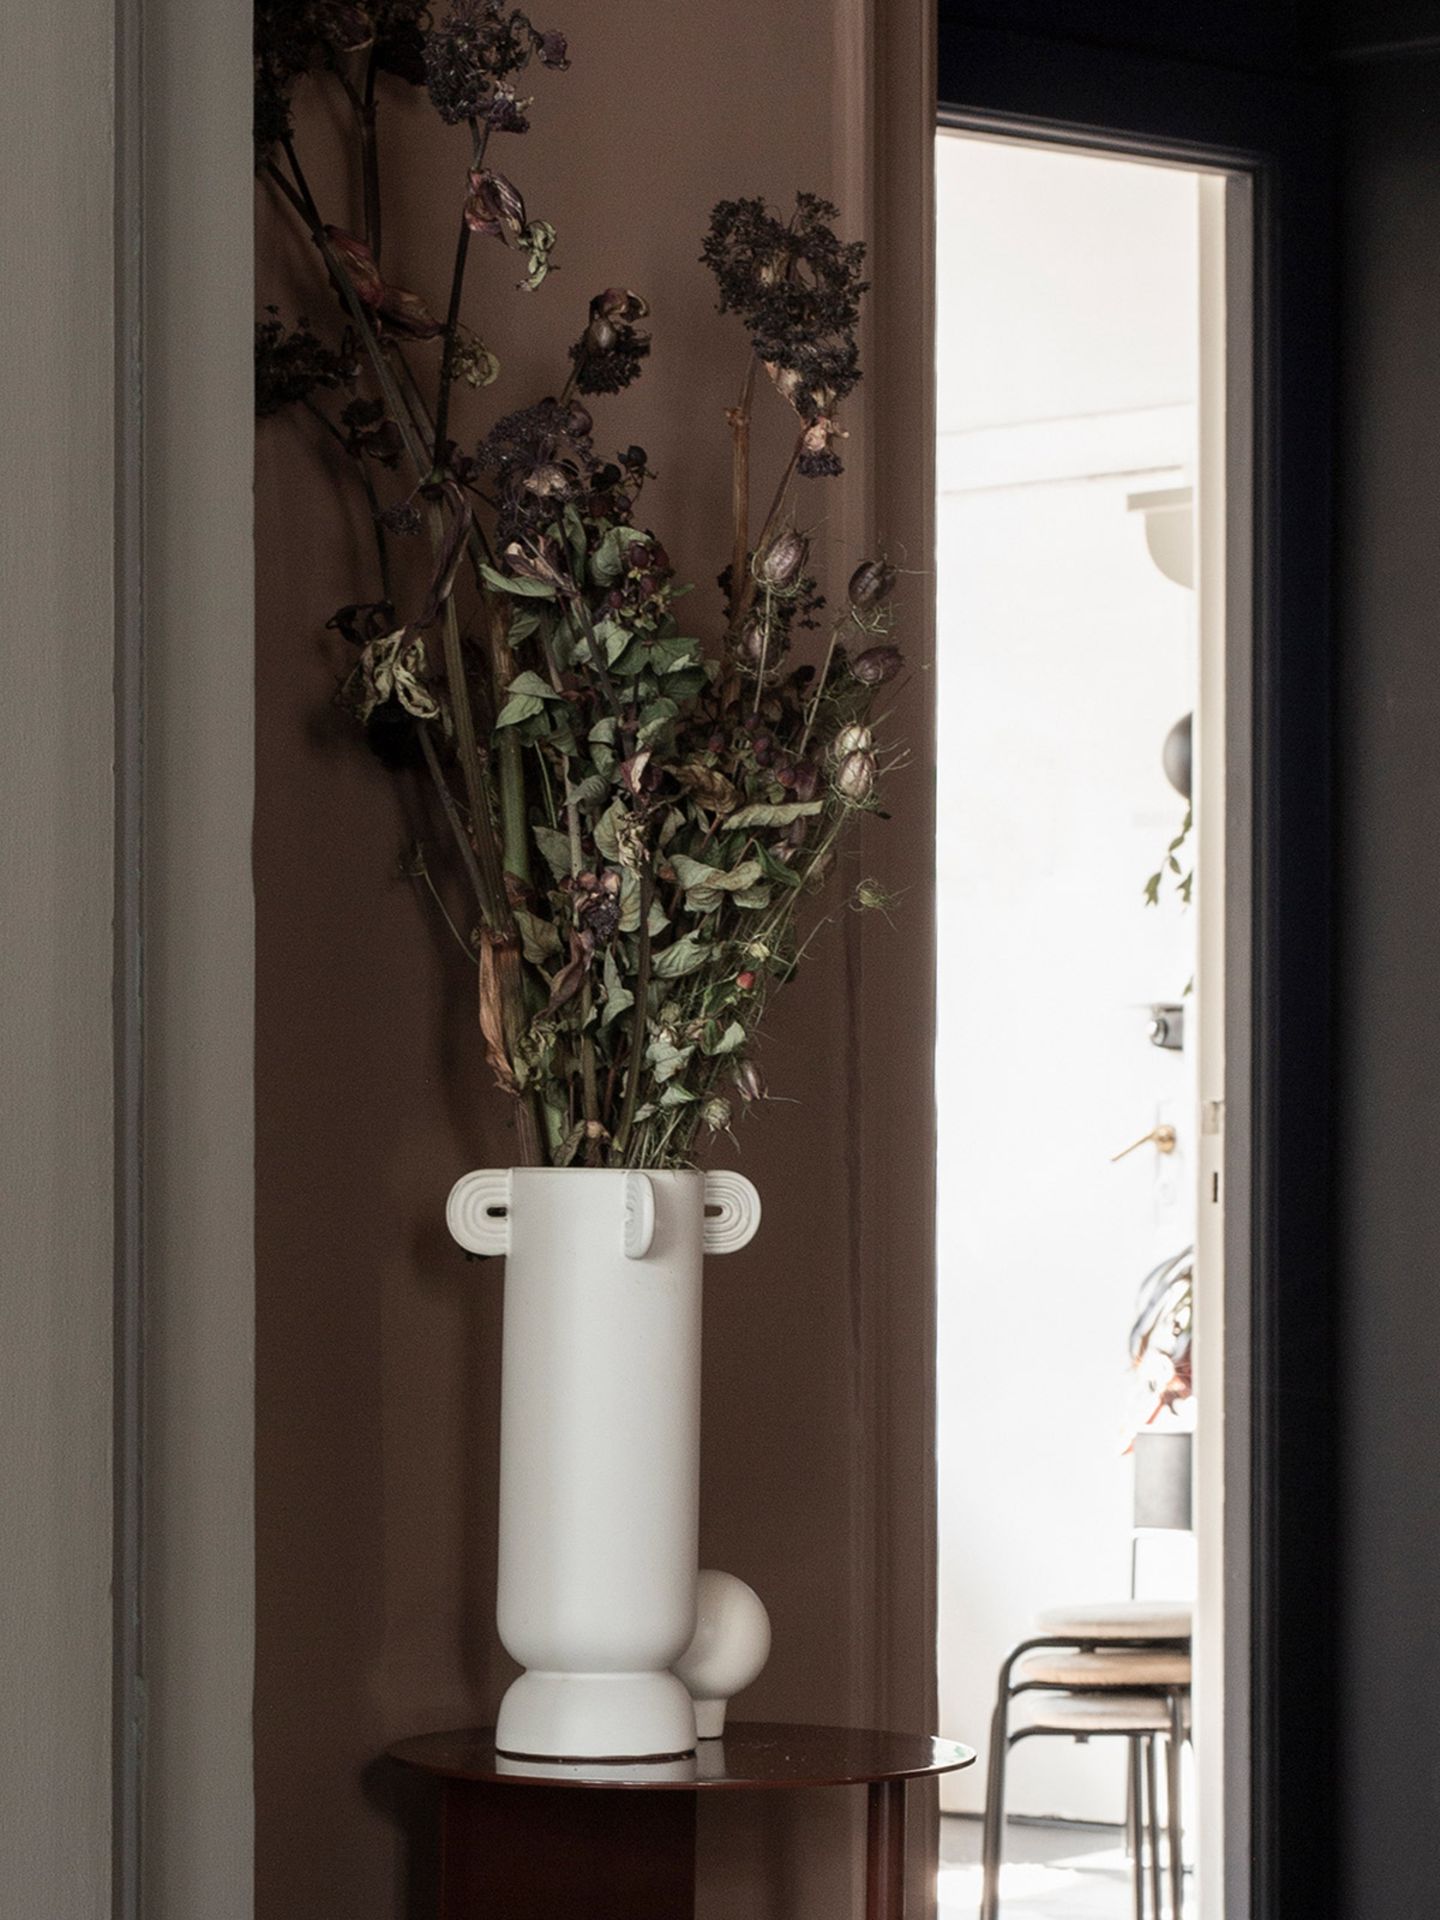 Bodenvase "Calli" aus der "Muses"-Kollektion von Ferm Living mit langstieligen Blumen auf einem Beistelltisch